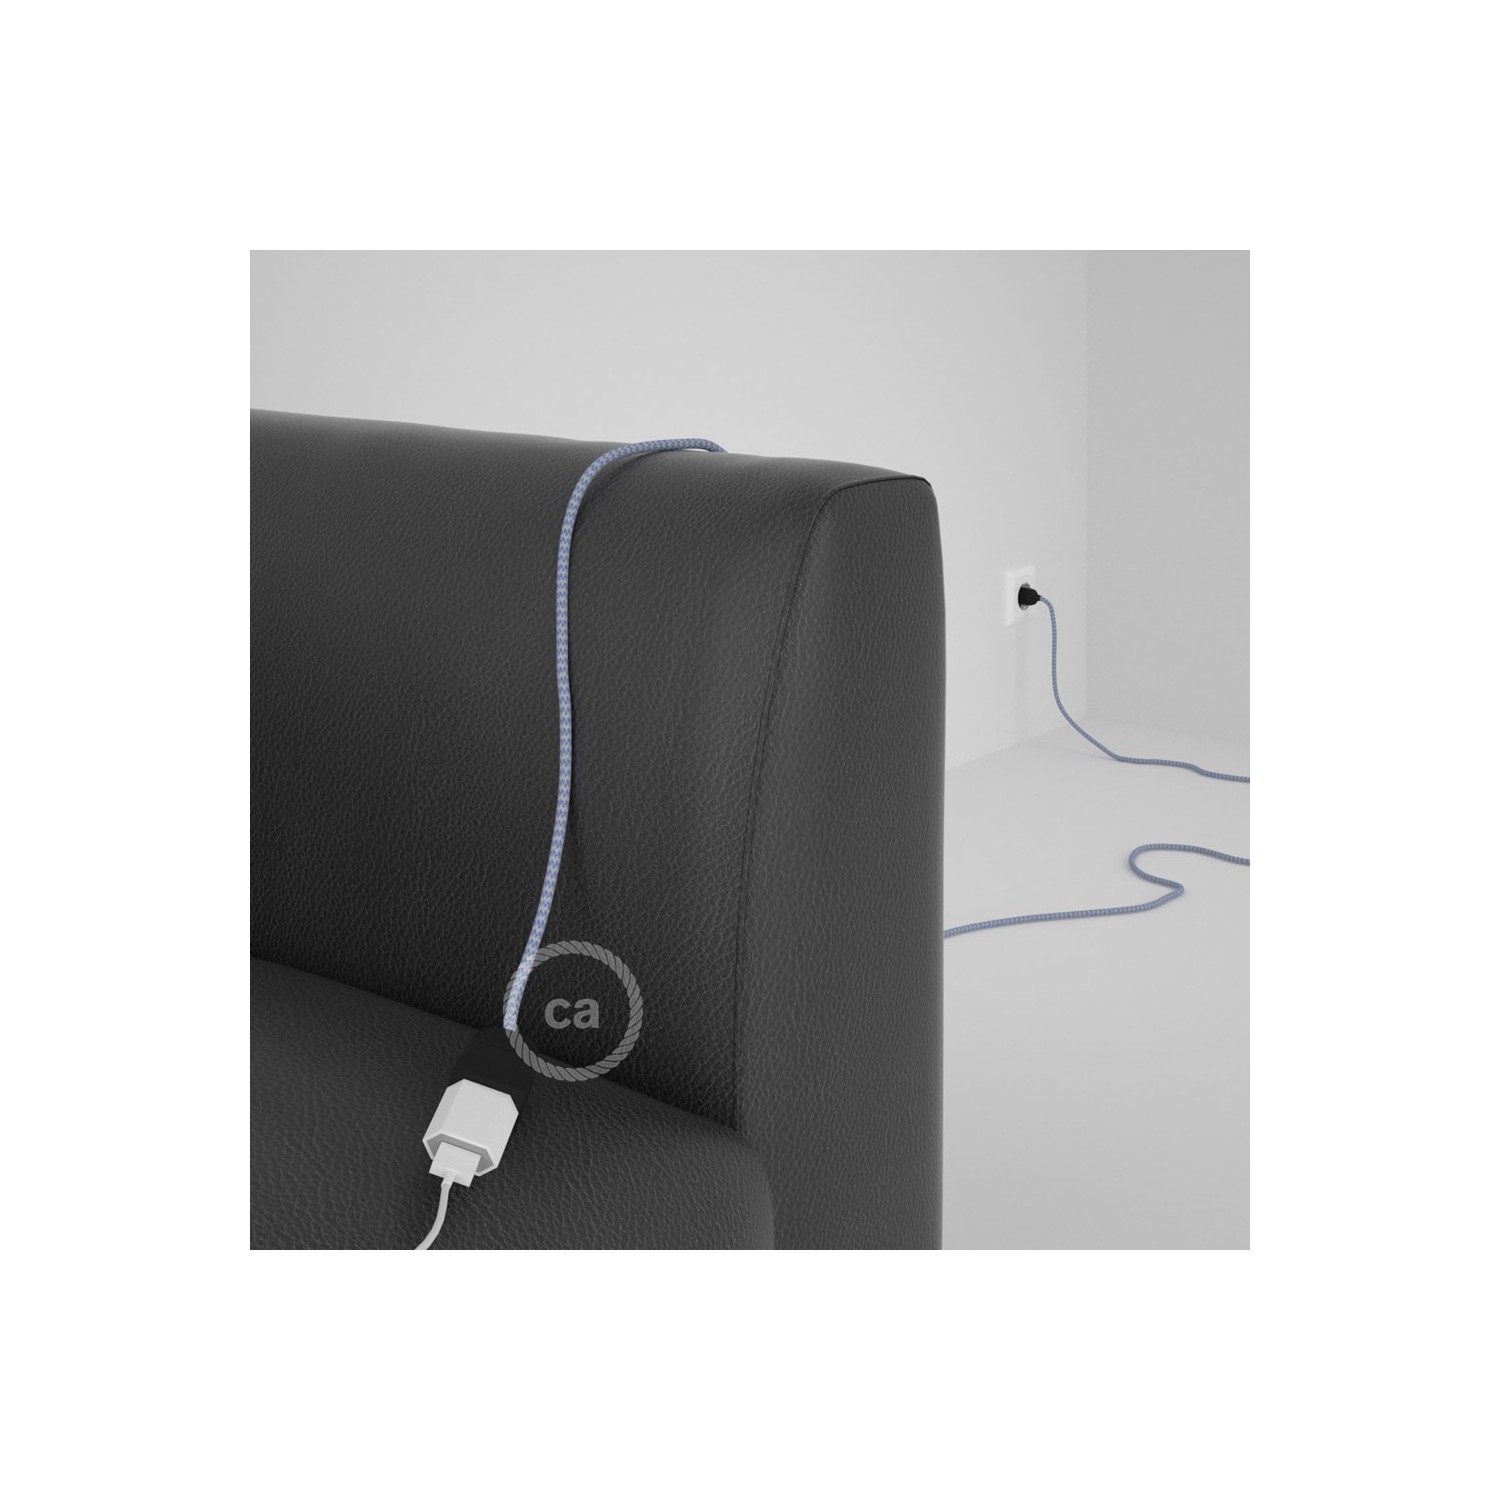 Rallonge électrique avec câble textile RZ07 Effet Soie ZigZag Blanc-Lilas 2P 10A Made in Italy.